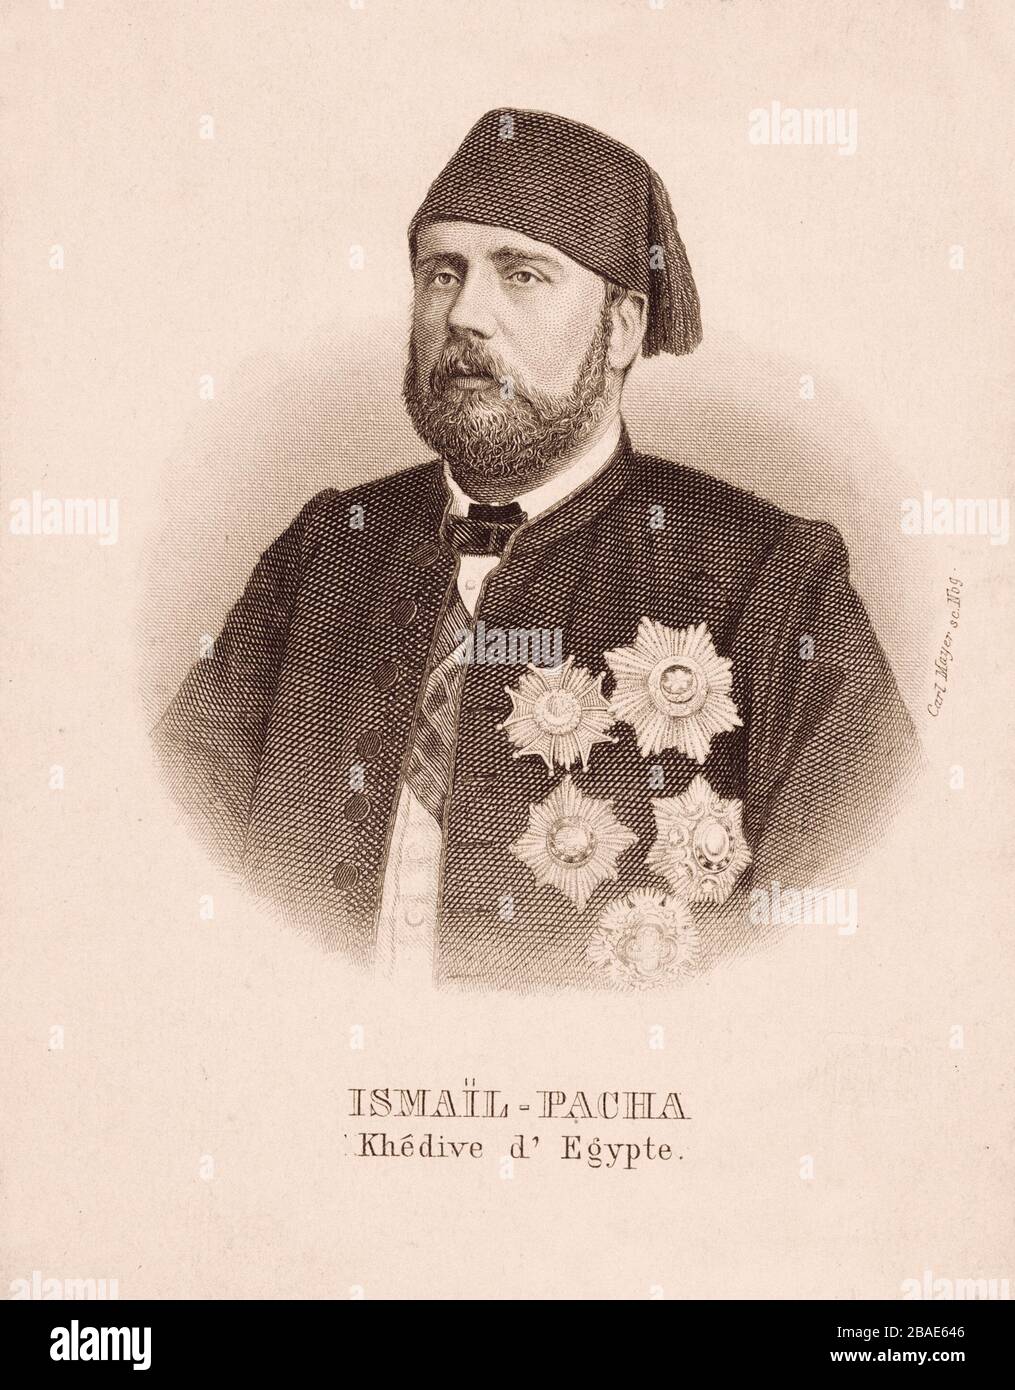 Ismail Pasha, conosciuto come Ismail il magnifico (1830 – 1895), fu il Khedive dell'Egitto e del Sudan dal 1863 al 1879, quando fu rimosso per volere di o Foto Stock